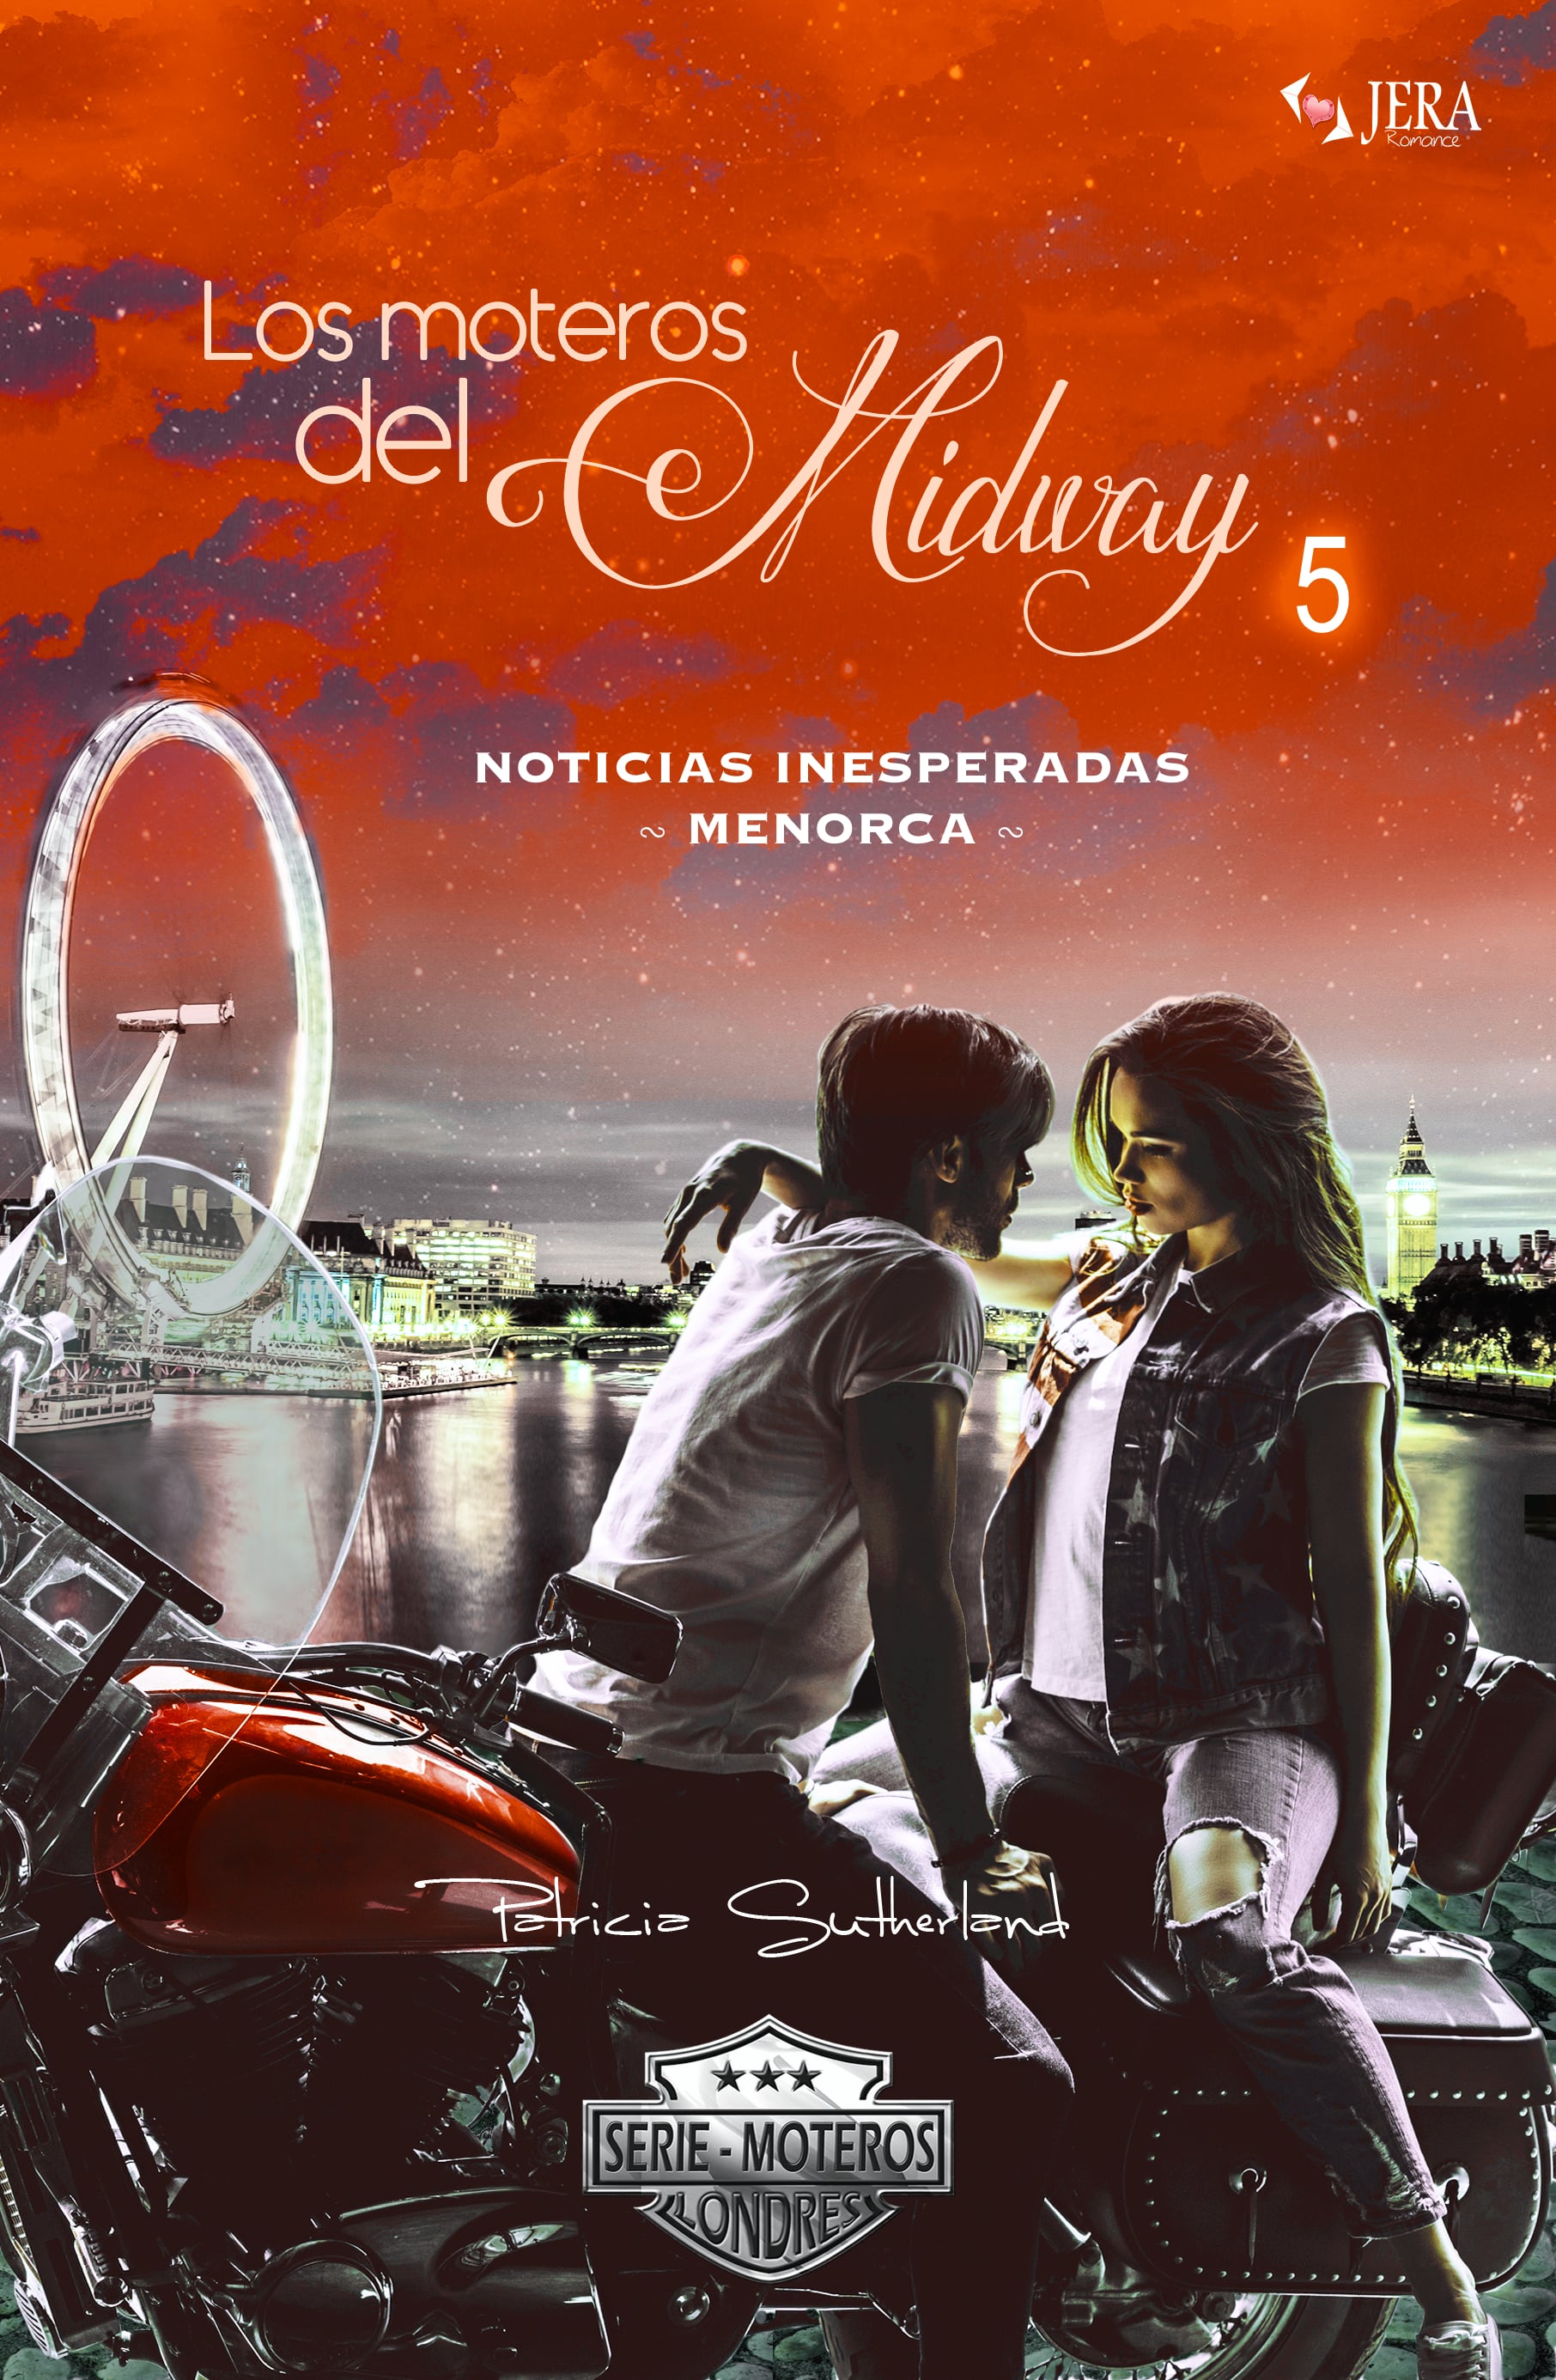 Los moteros del MidWay, 5. Noticias inesperadas. Menorca. Extras Serie Moteros 11